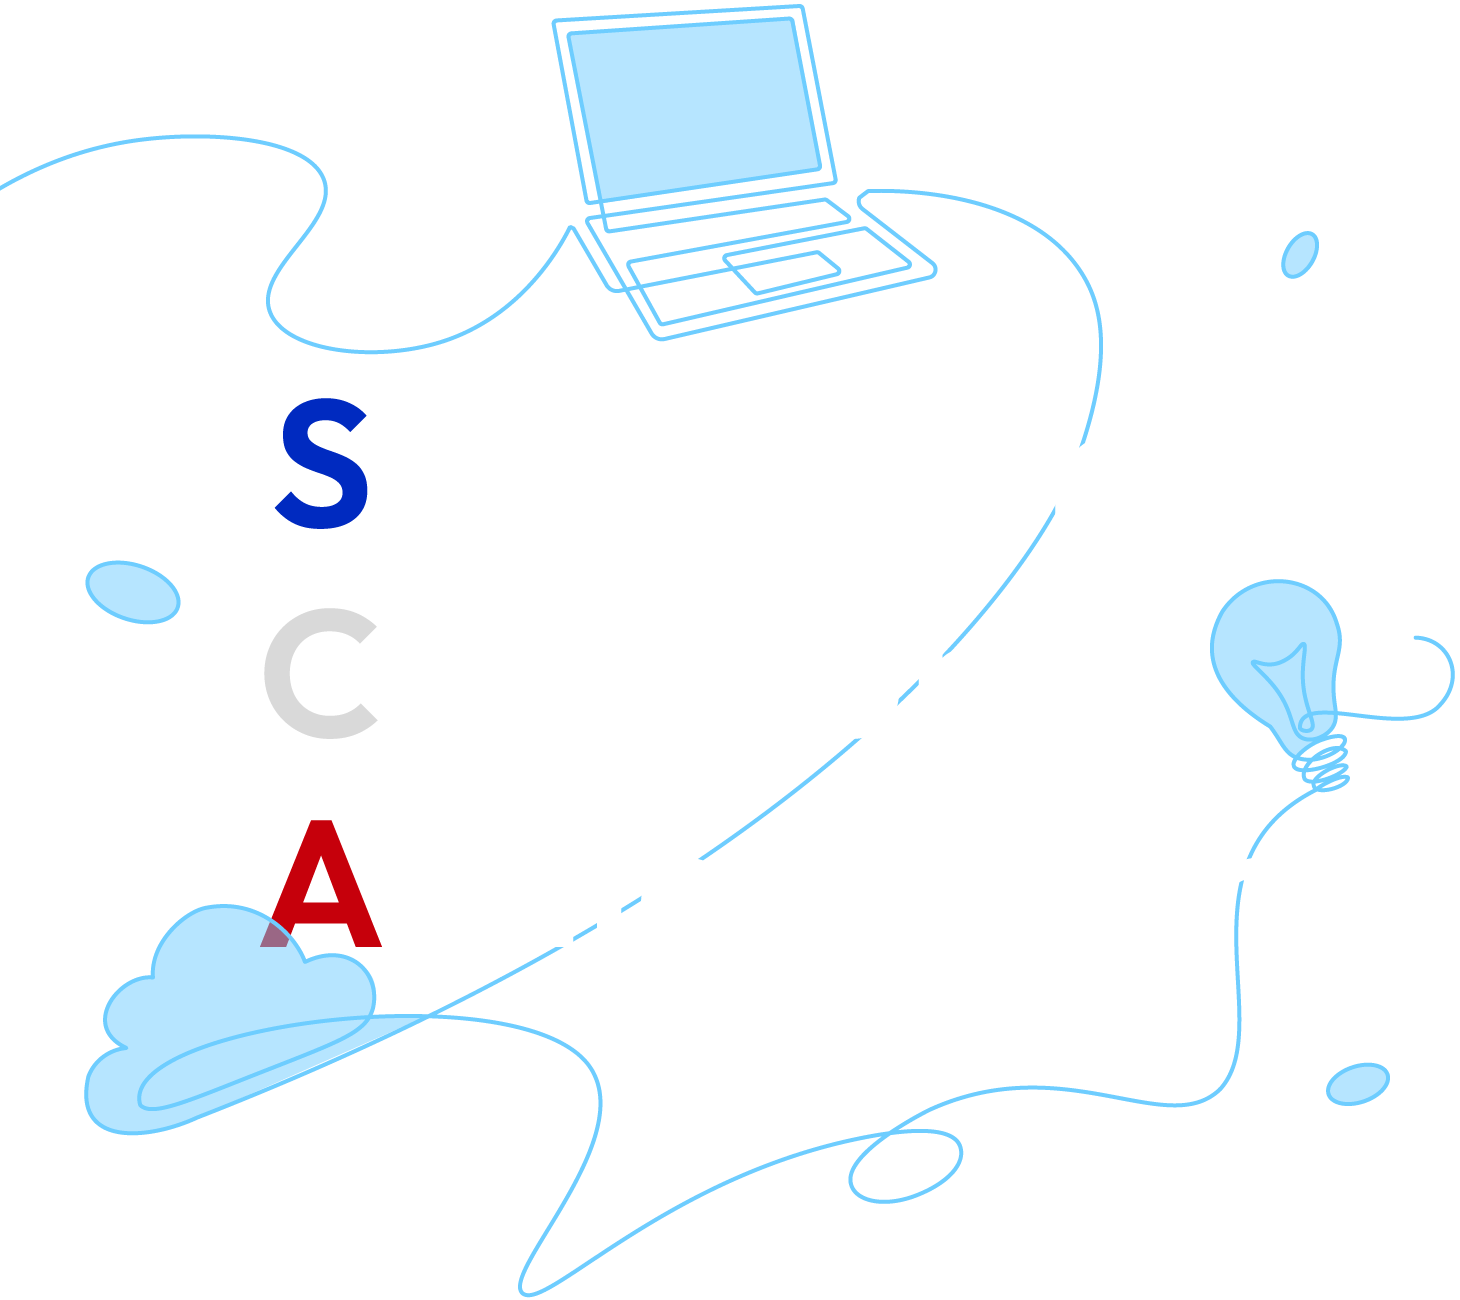 Spiral Canon. Creation. Achievement.